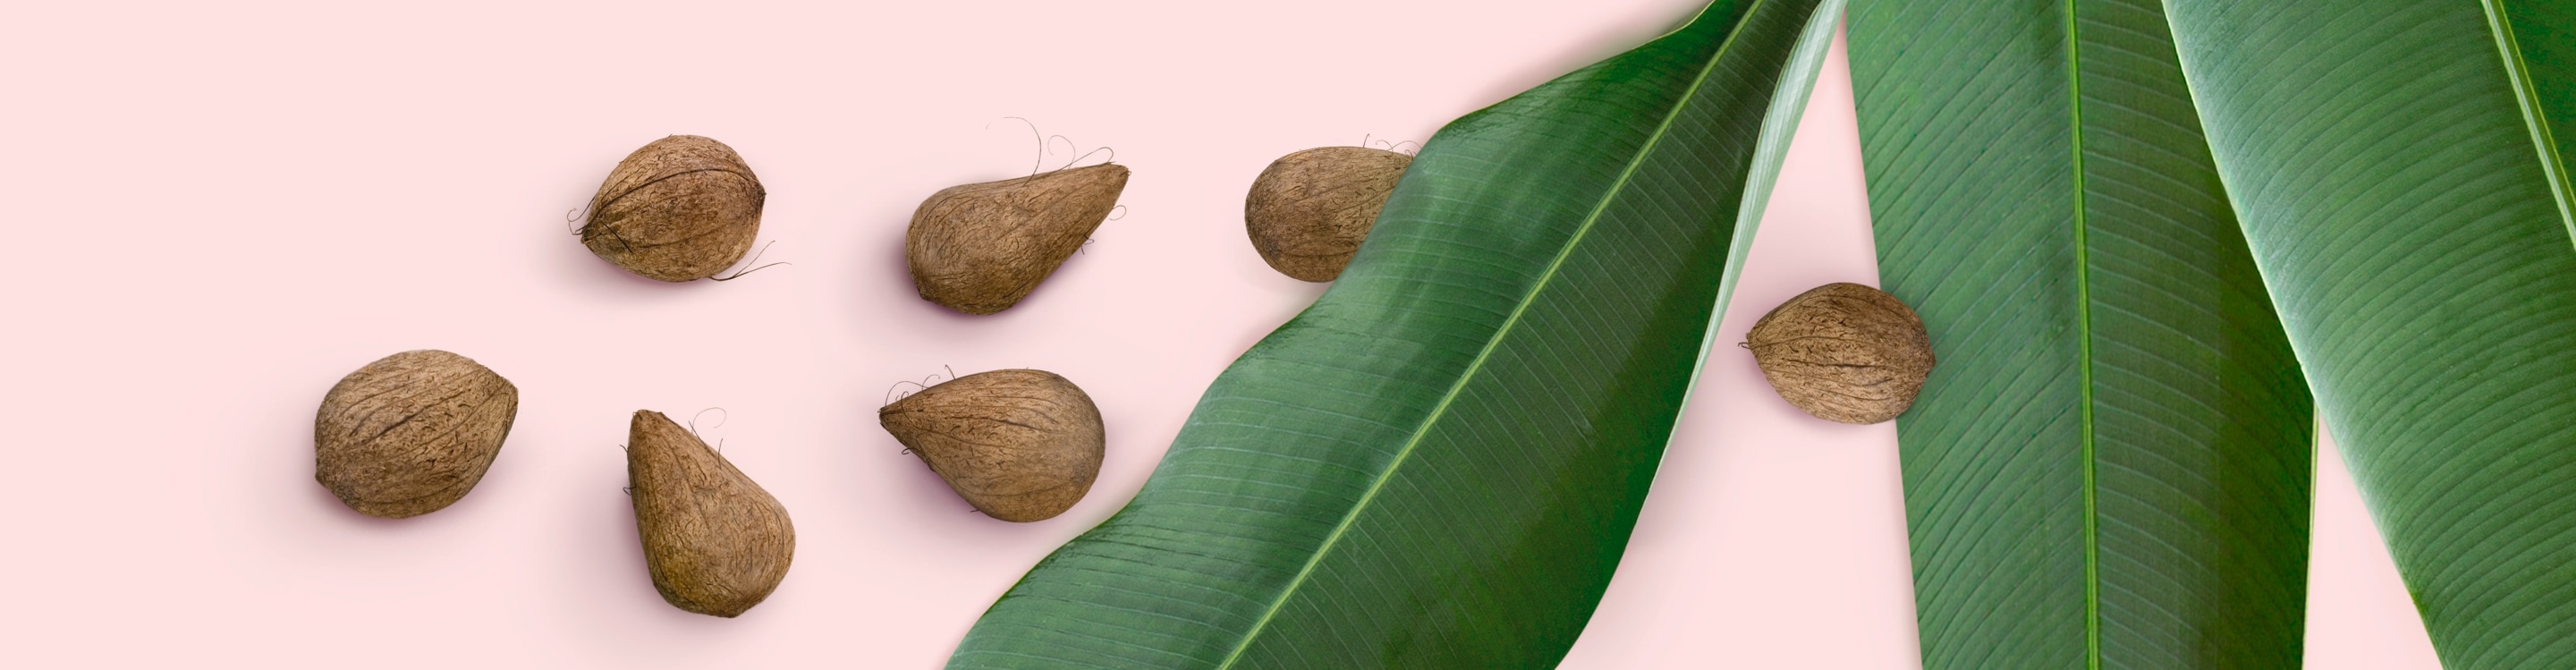 Murumuru nuts and leaves Text